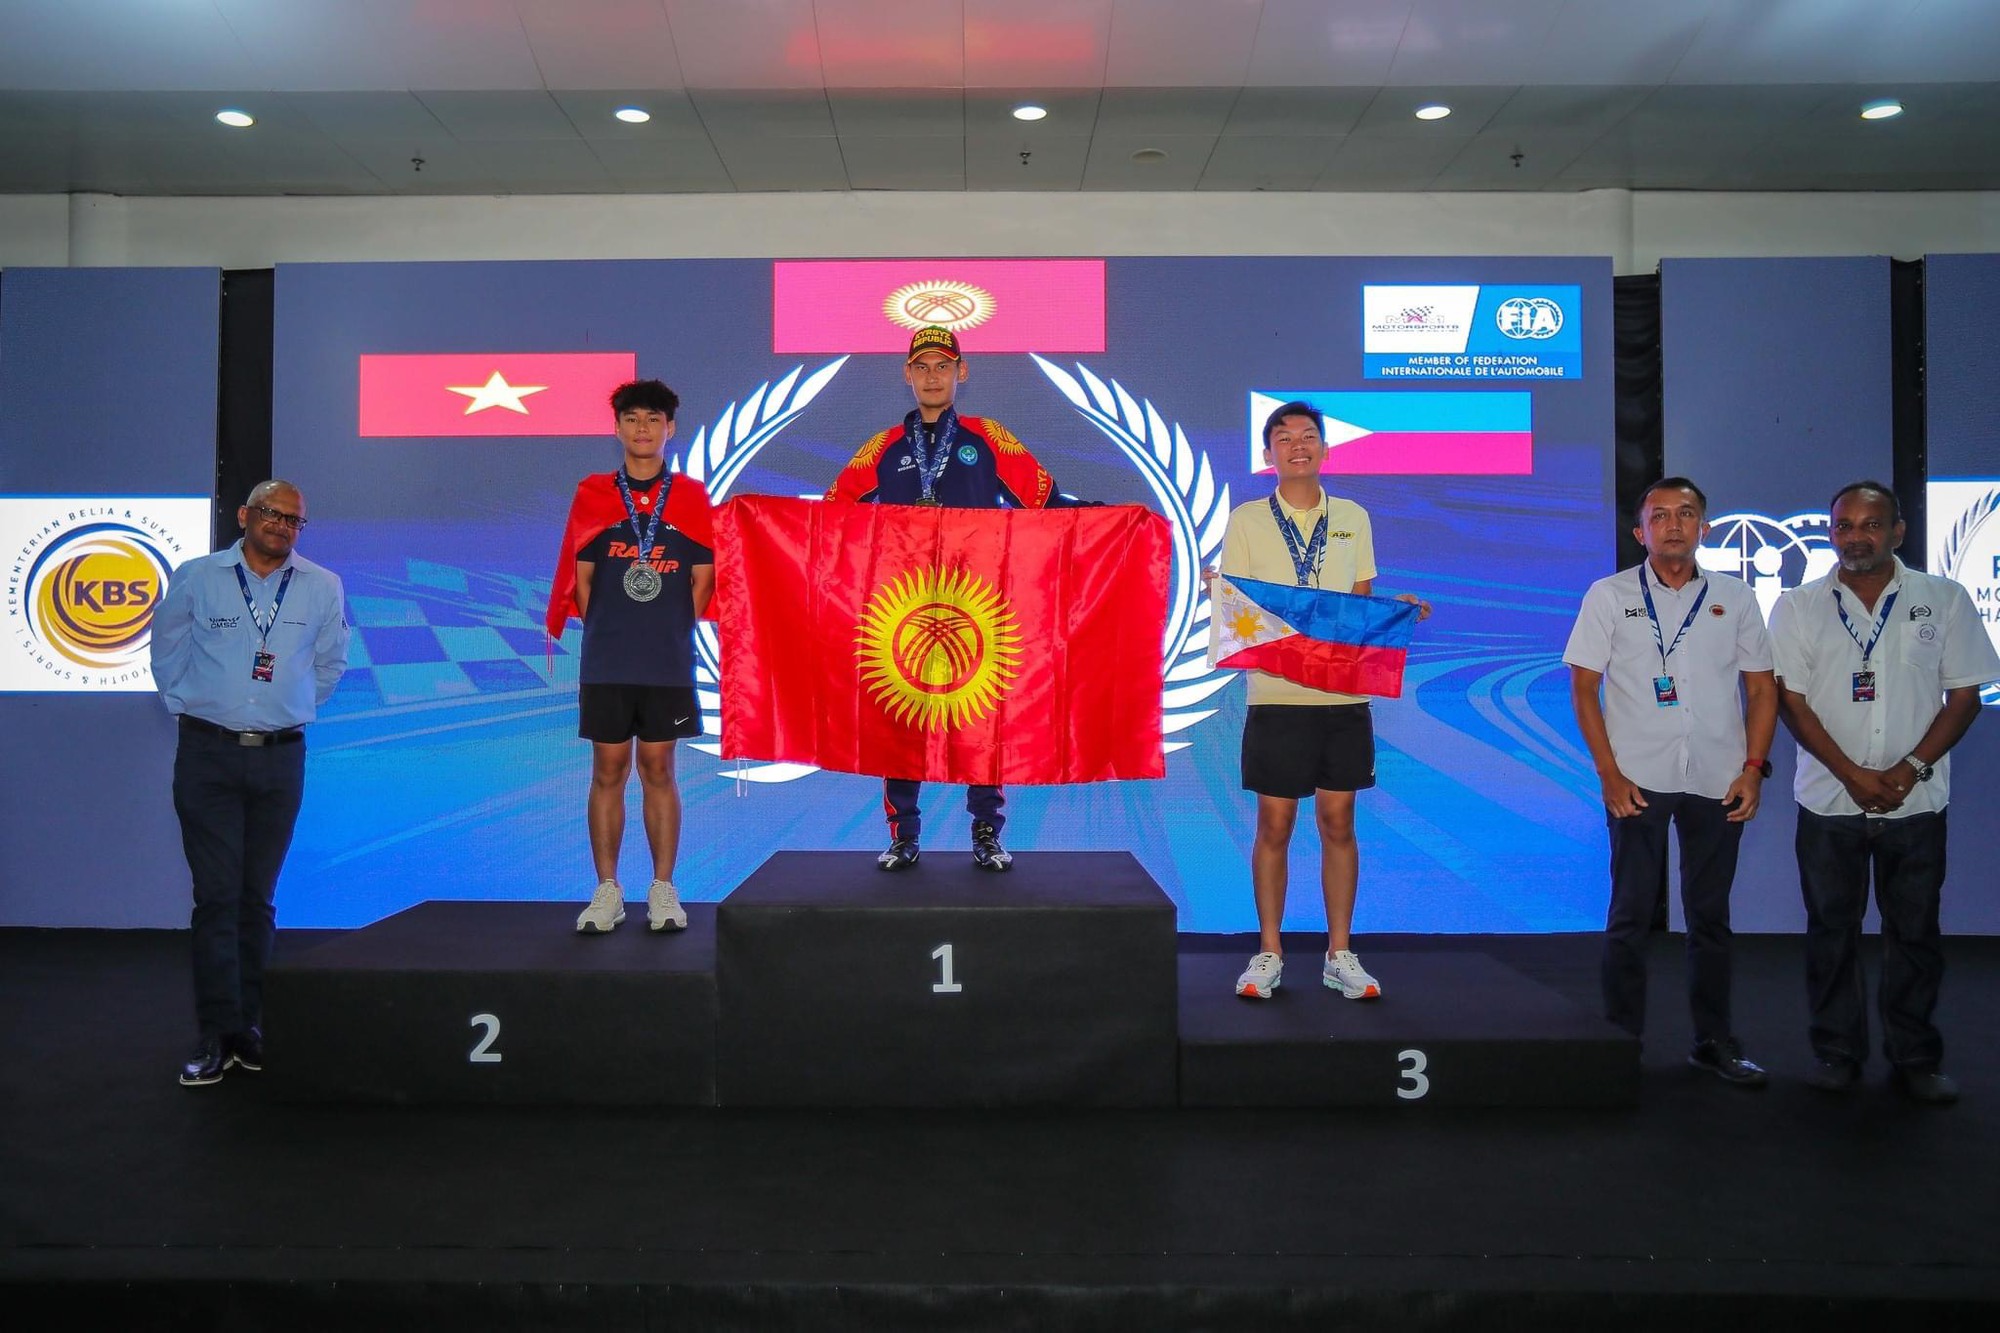 Tay đua Việt Nam lần đầu có giải ở đấu trường thể thao tốc độ châu Á - Ảnh 1.